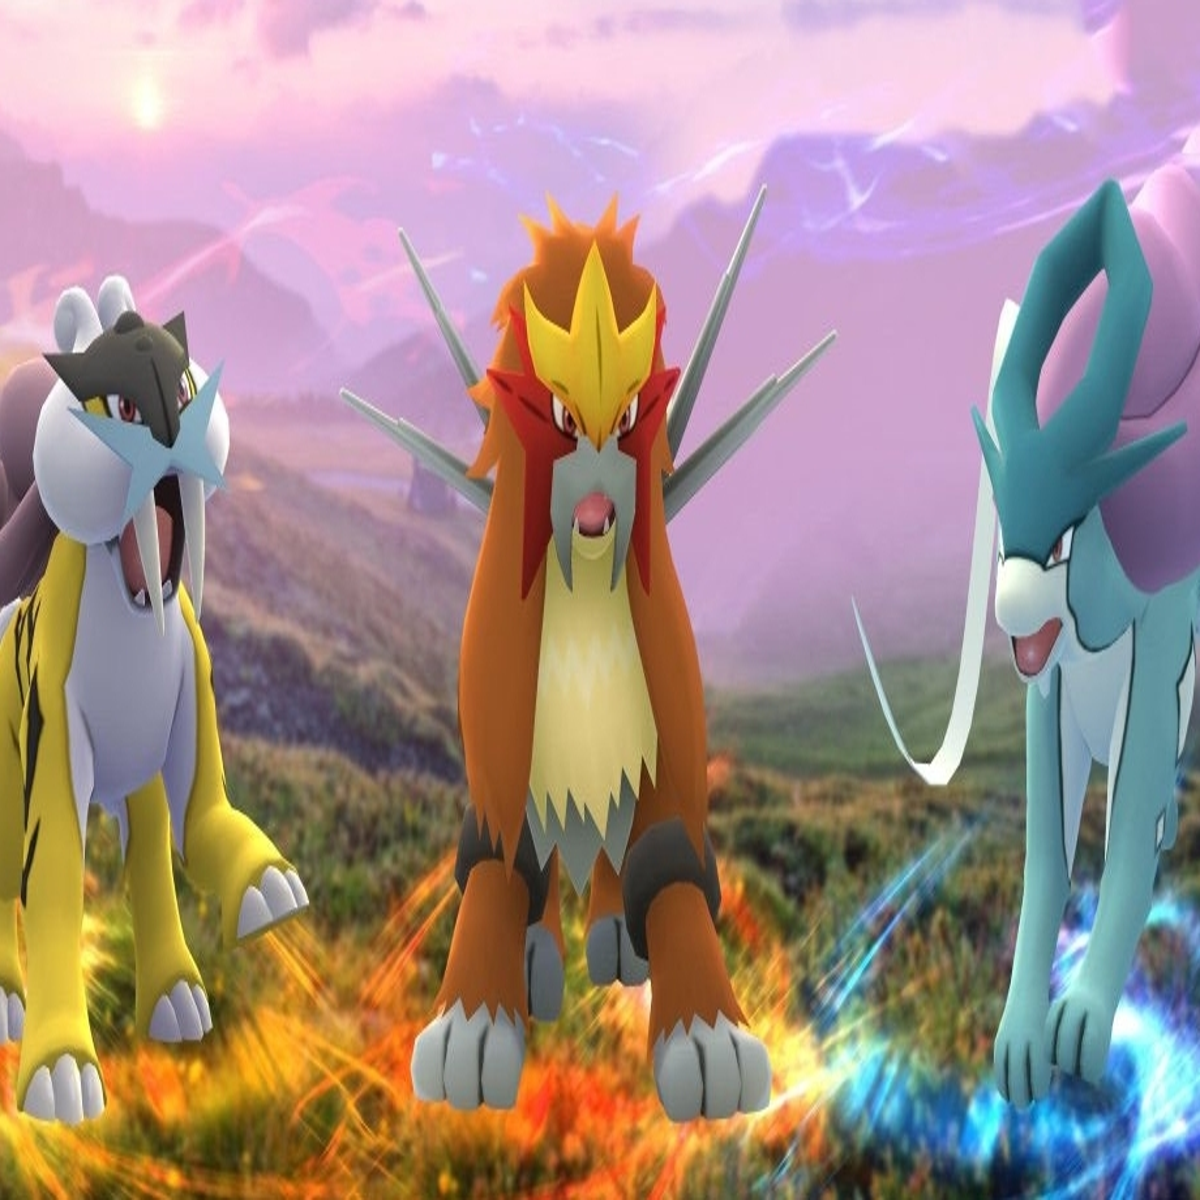 Pokémon Go - Raid de Zamazenta - counters, fraquezas e ataques